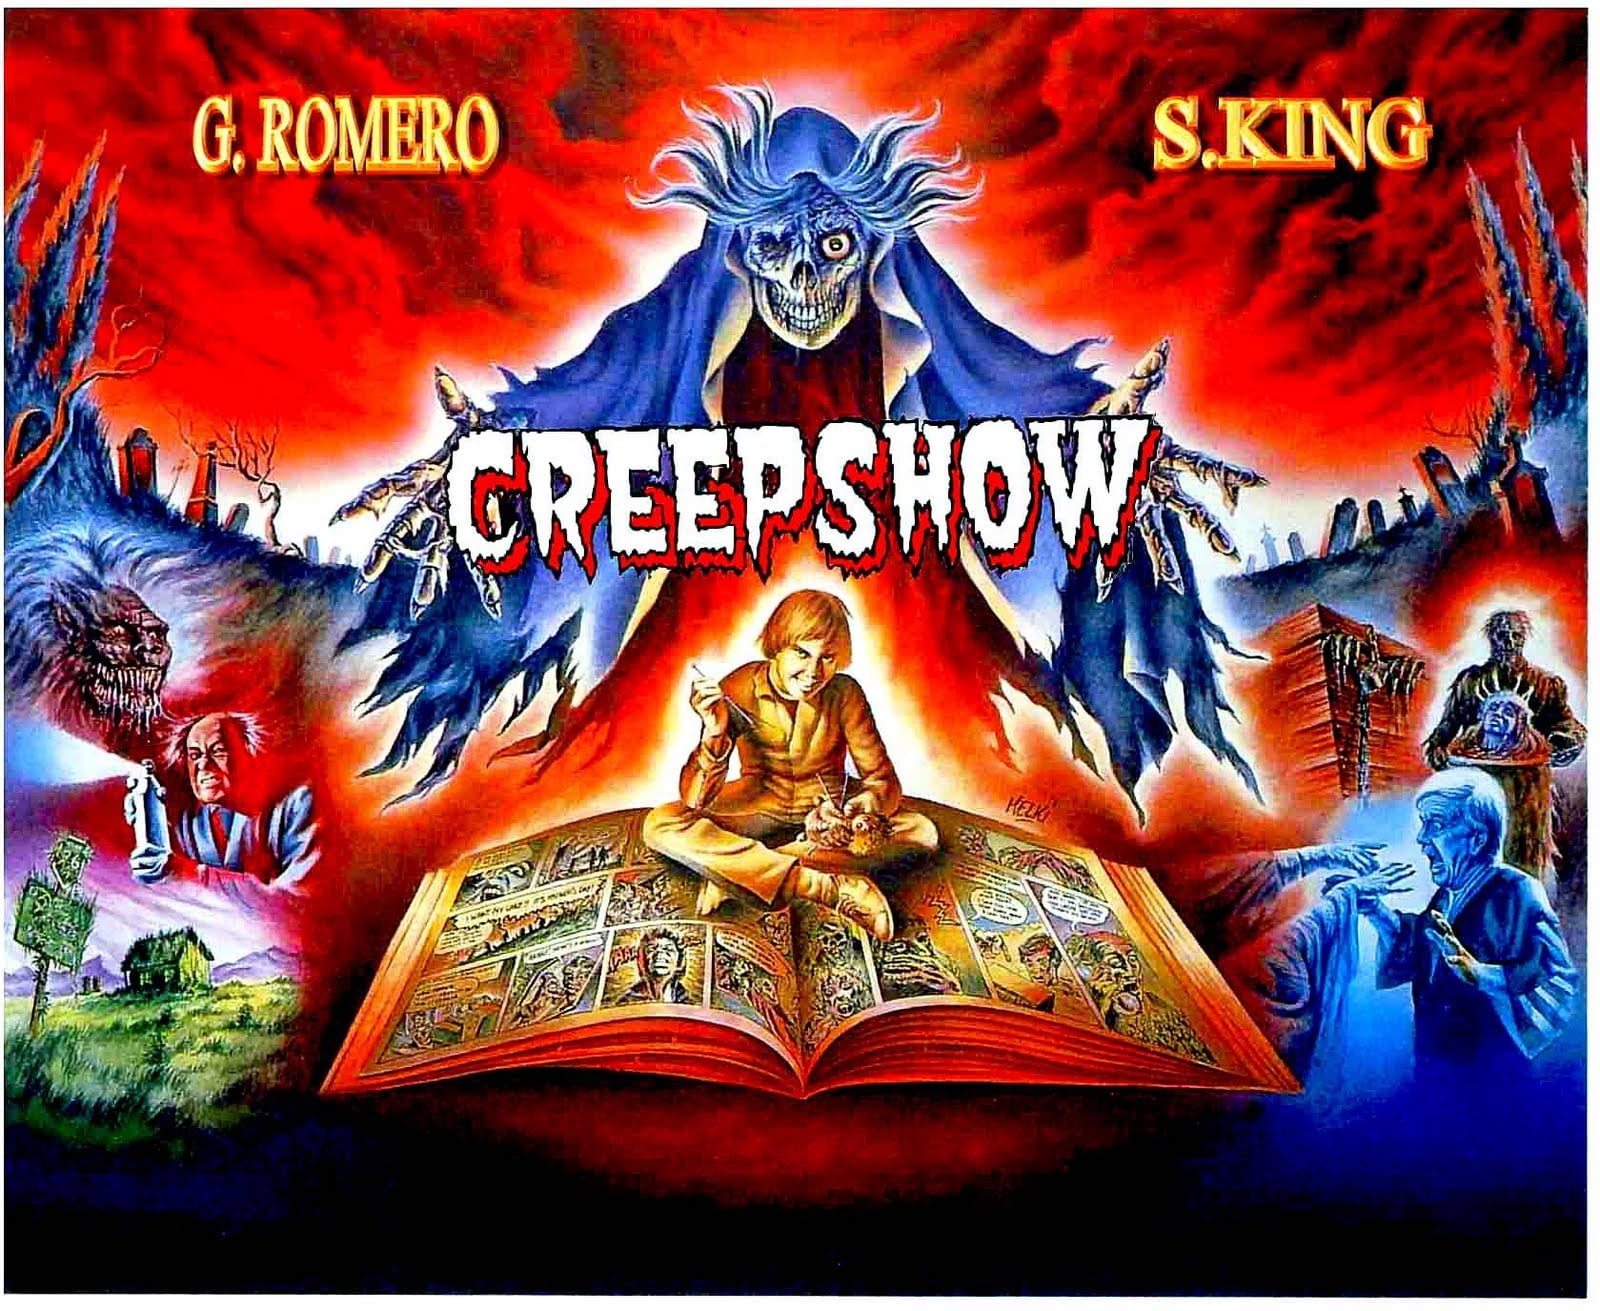 Revelan títulos y escritores de series de TV de Creepshow revelados